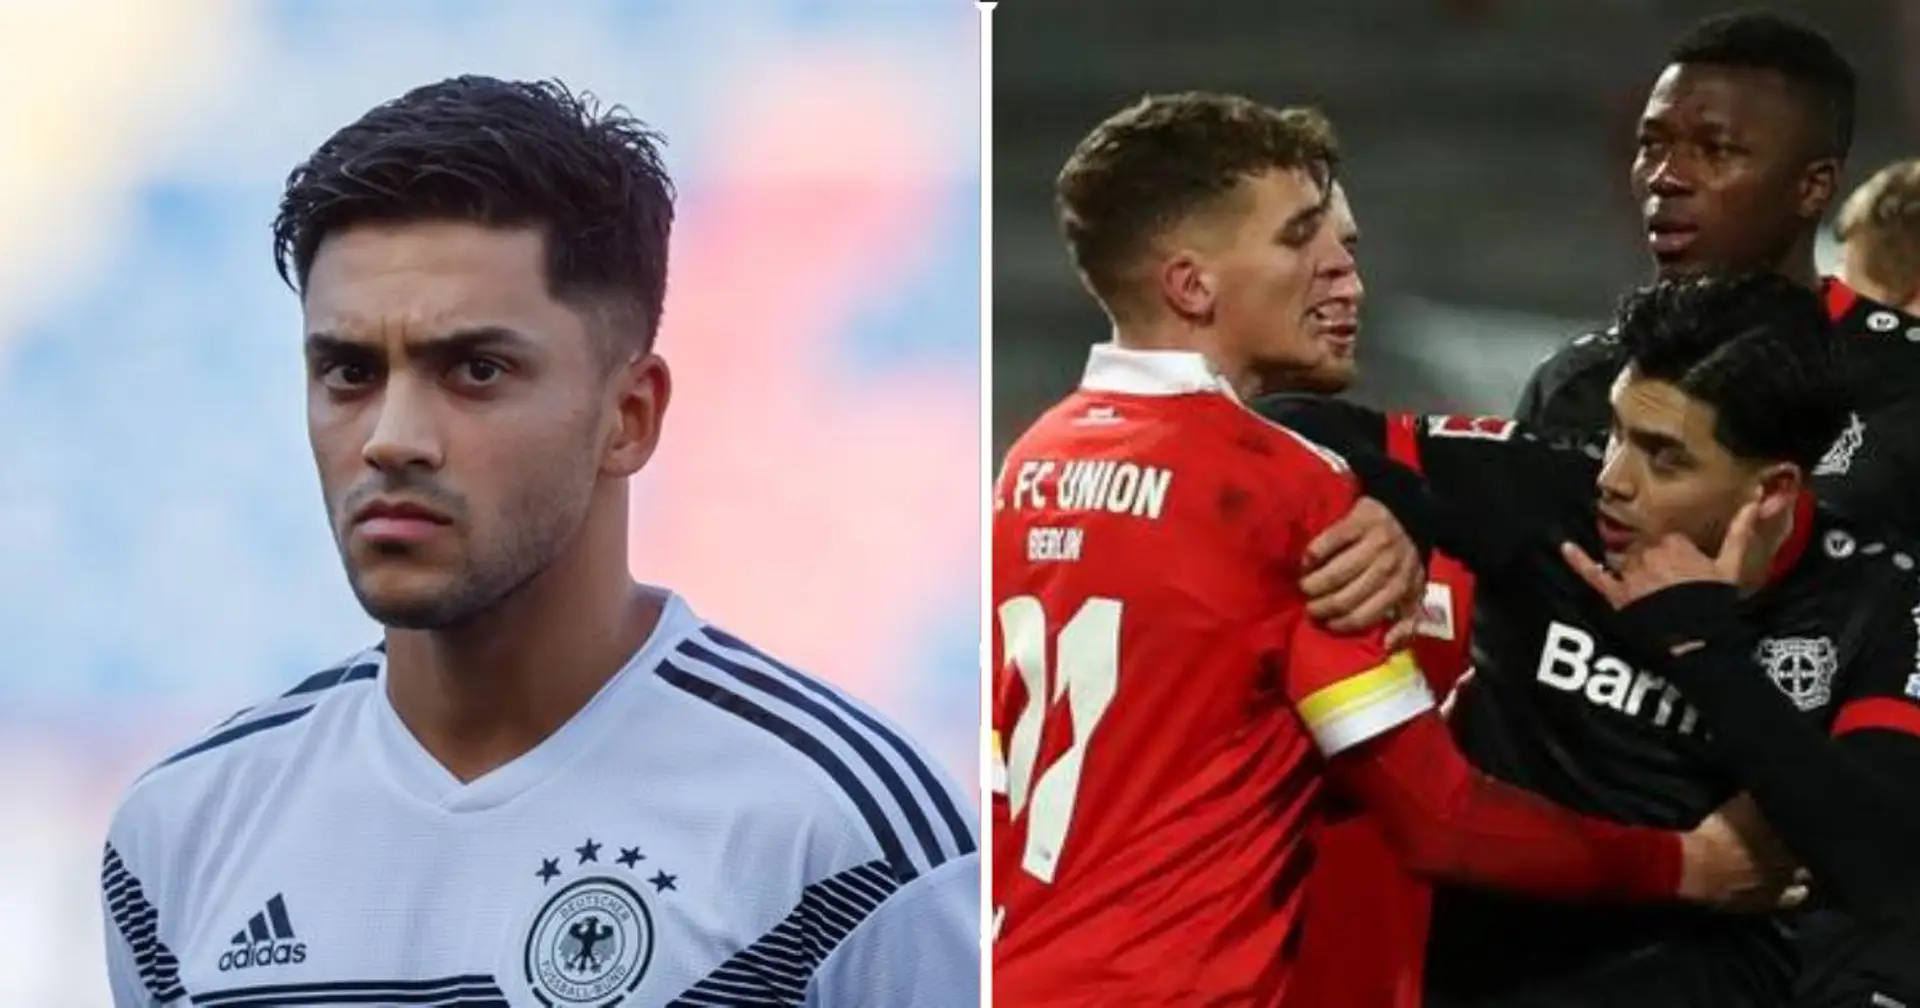 Un jugador del Unión Berlín llamó "afgano de m***" a futbolista del Lerverkusen  durante una disputa en el campo